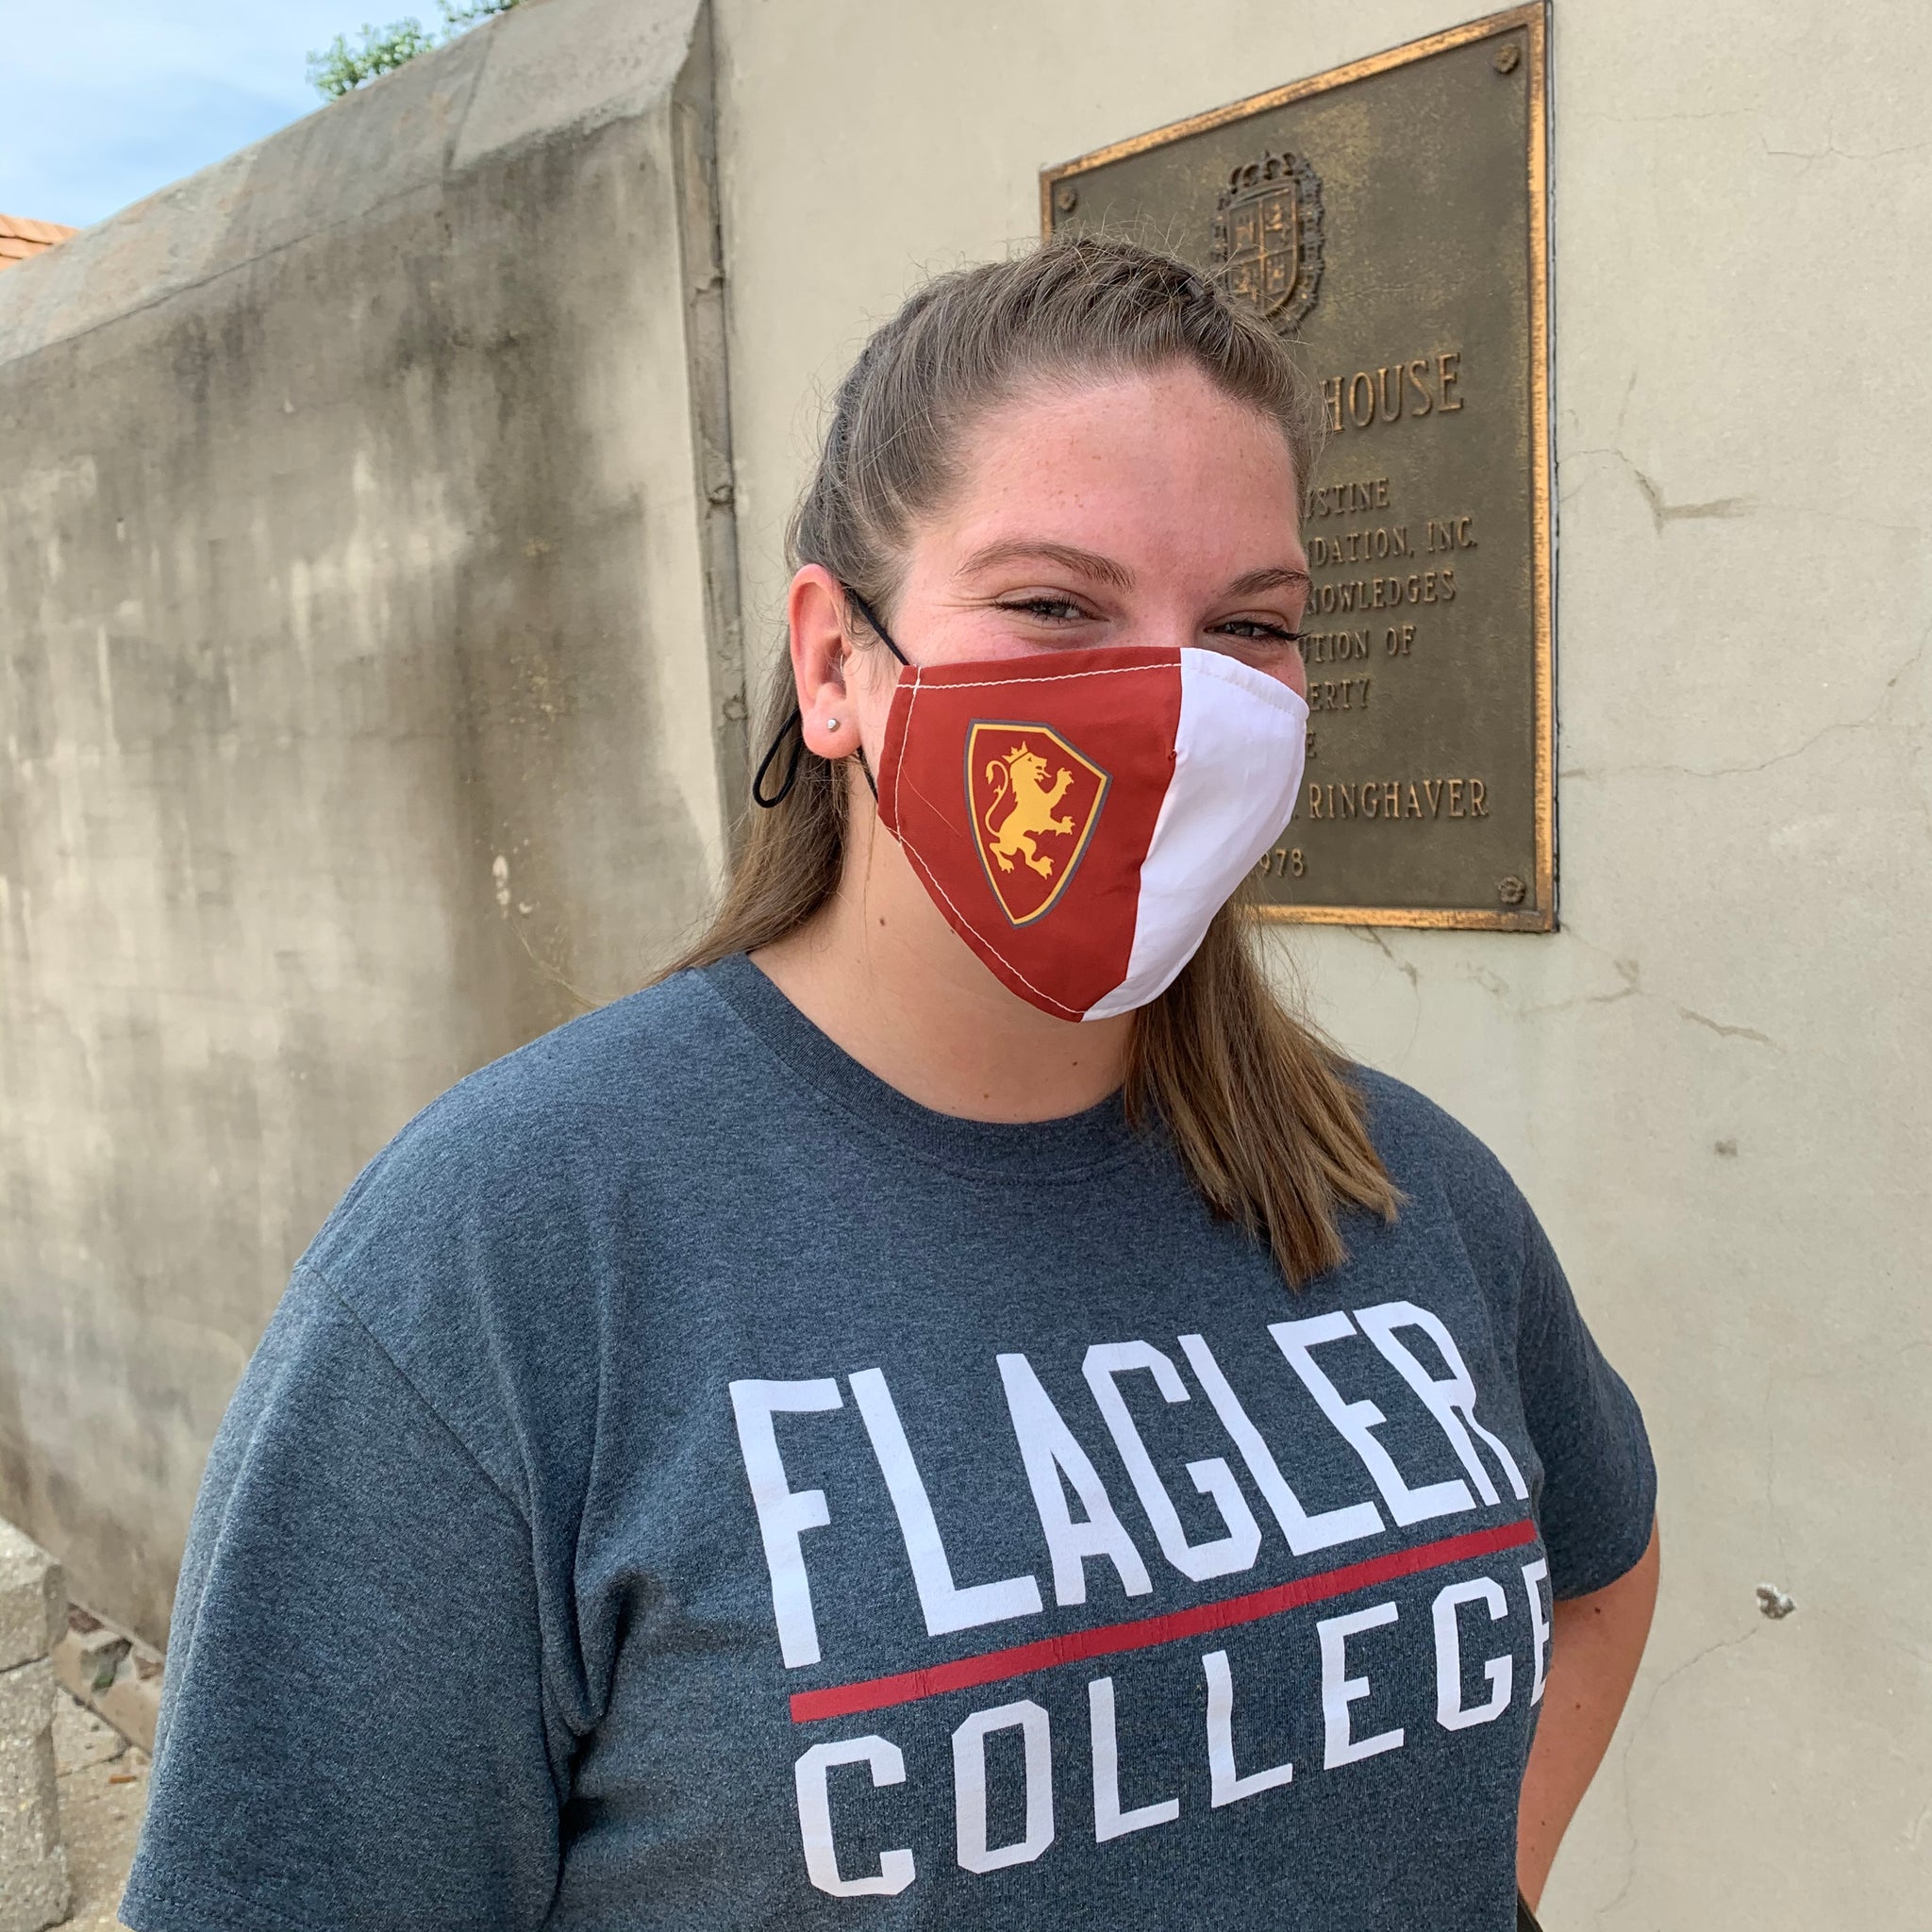 Flagler College Shield 24 oz Tumbler - Flagler's Legacy